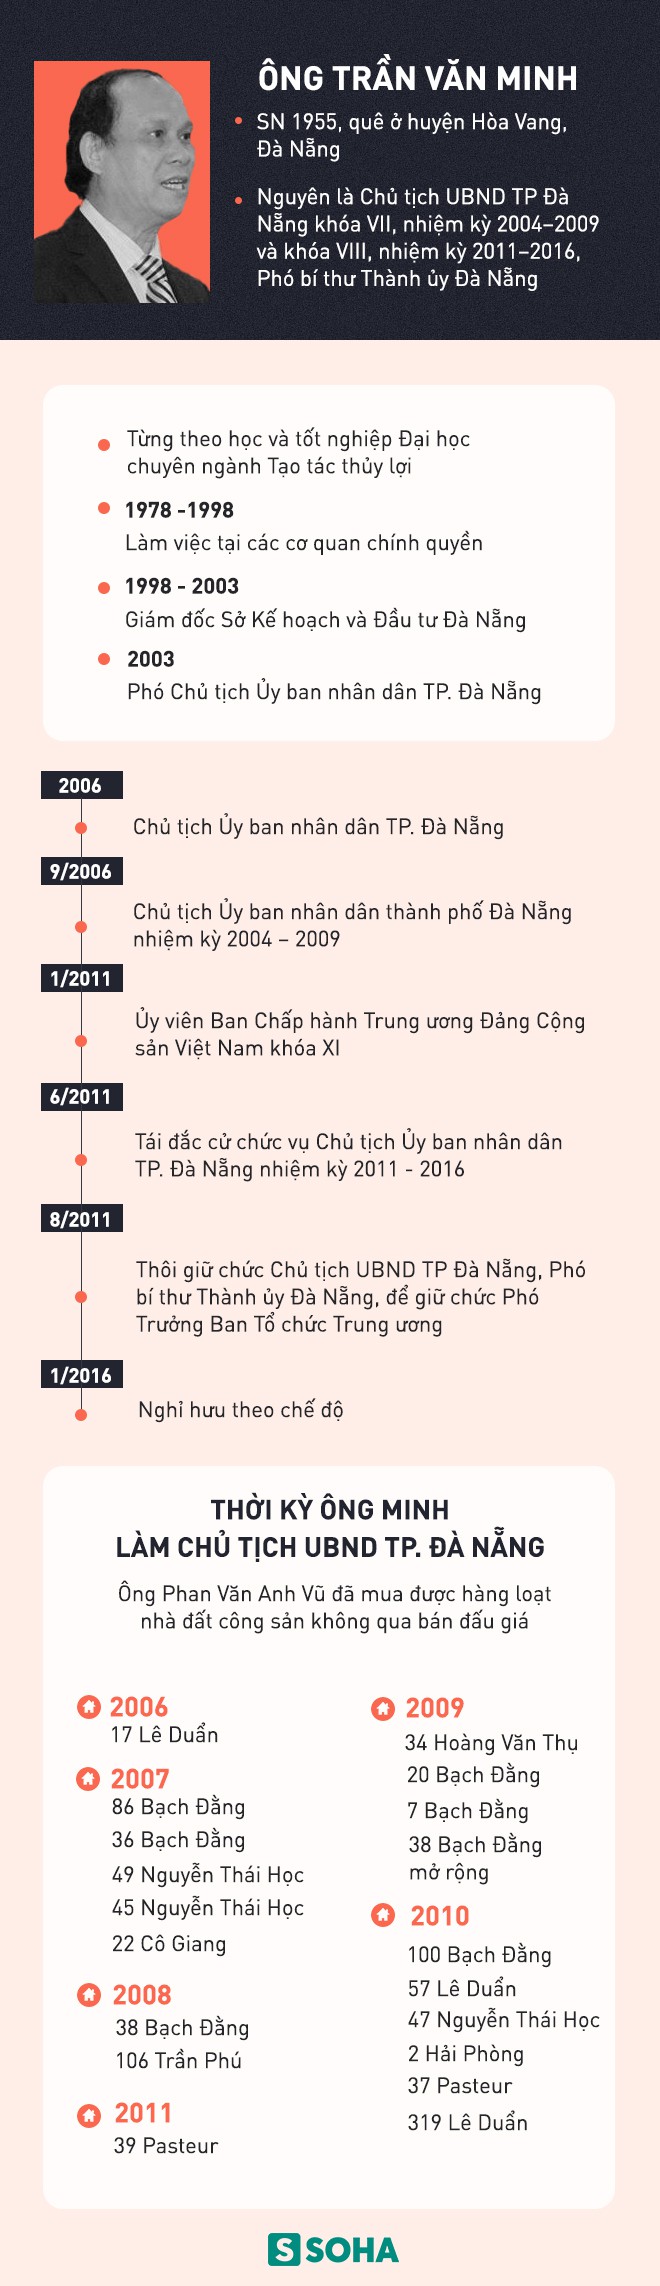 Quan lộ của cựu Chủ tịch Đà Nẵng Trần Văn Minh và mối liên hệ với Vũ Nhôm - Ảnh 2.